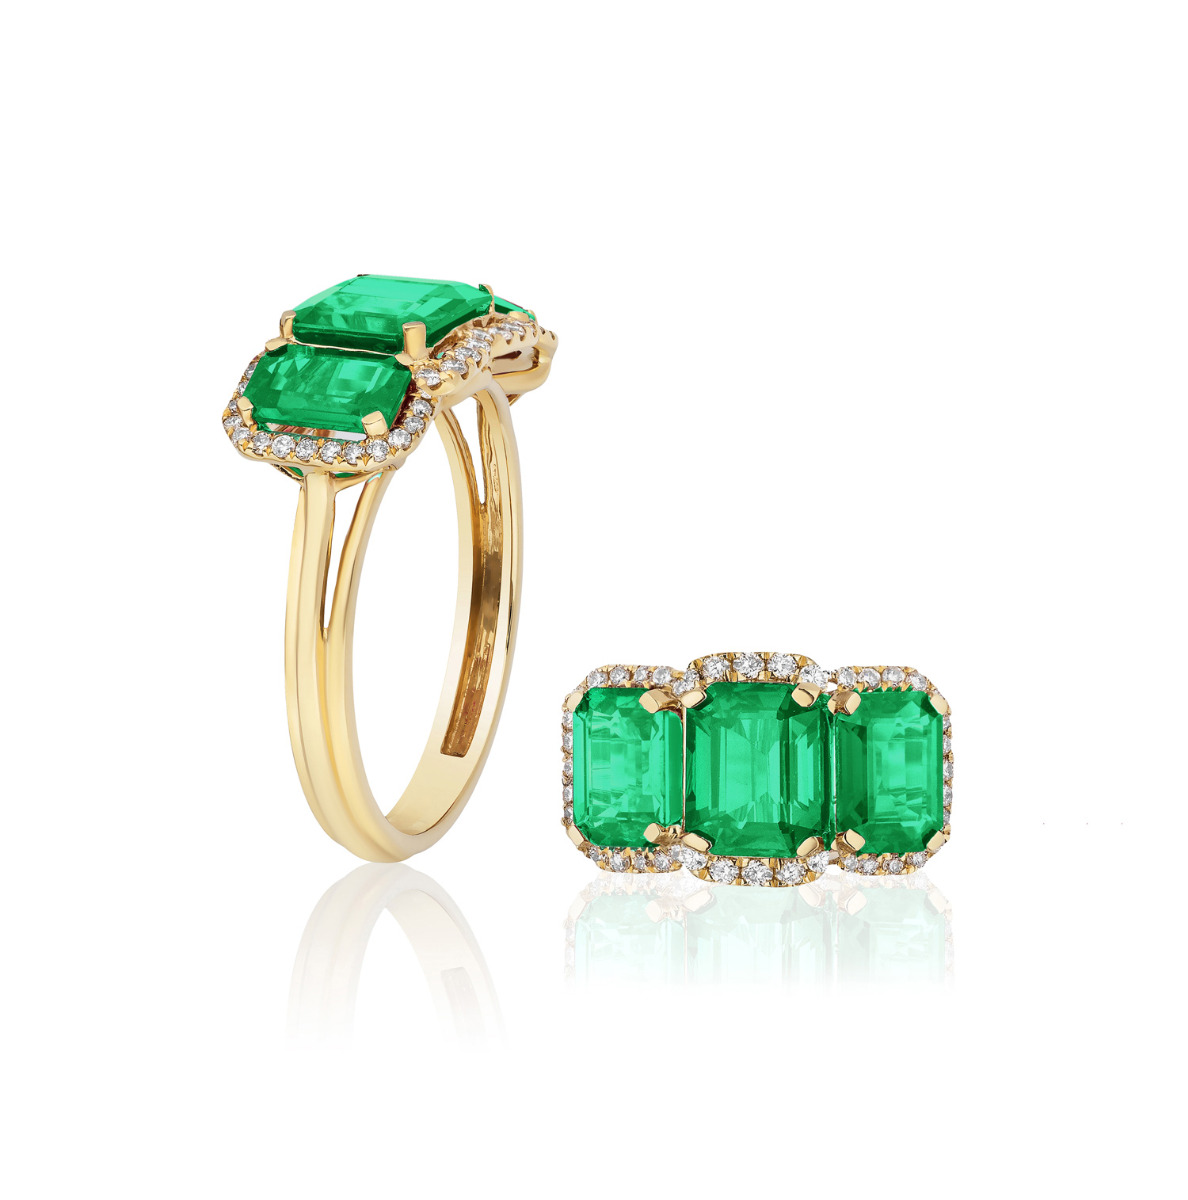 Goshwara "G-One" 3 Stone Emerald Ring with Diamonds